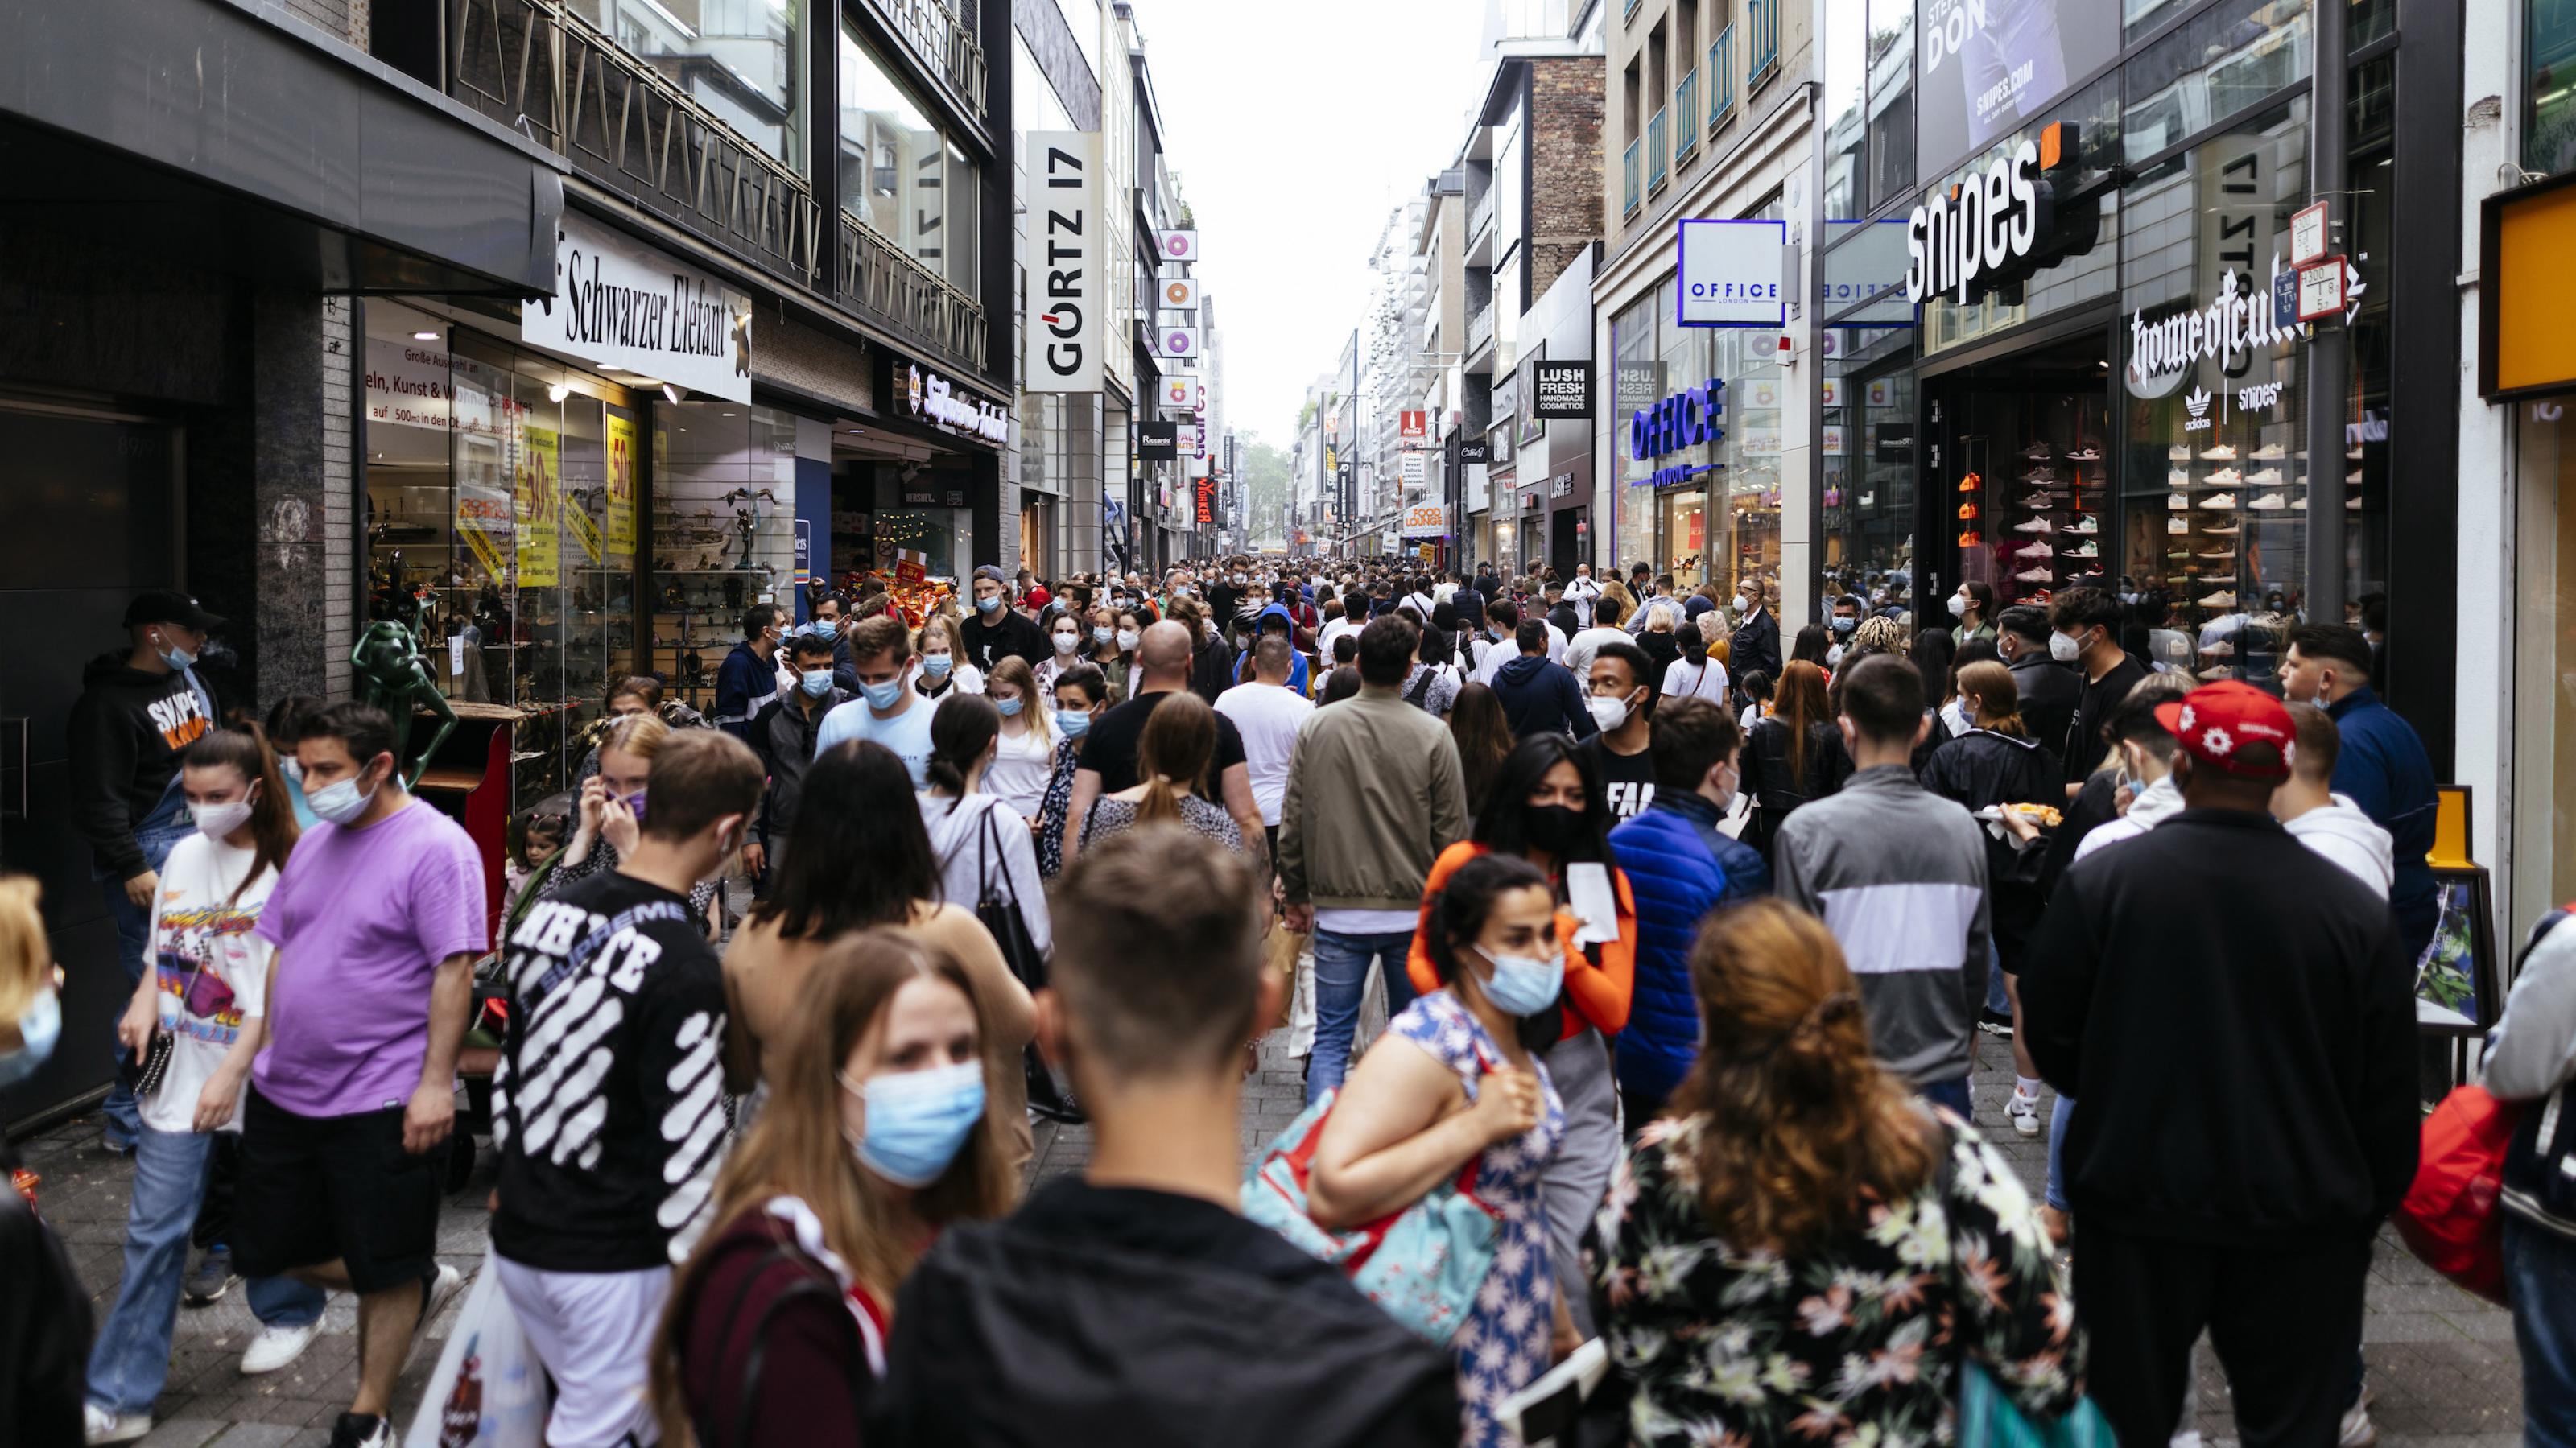 Menschen drängen sich beim Einkaufen in einer typischen deutschen Fußgängerzone. Einige tragen Gesichtsmasken zum Schutz vor einer Coronainfektion.